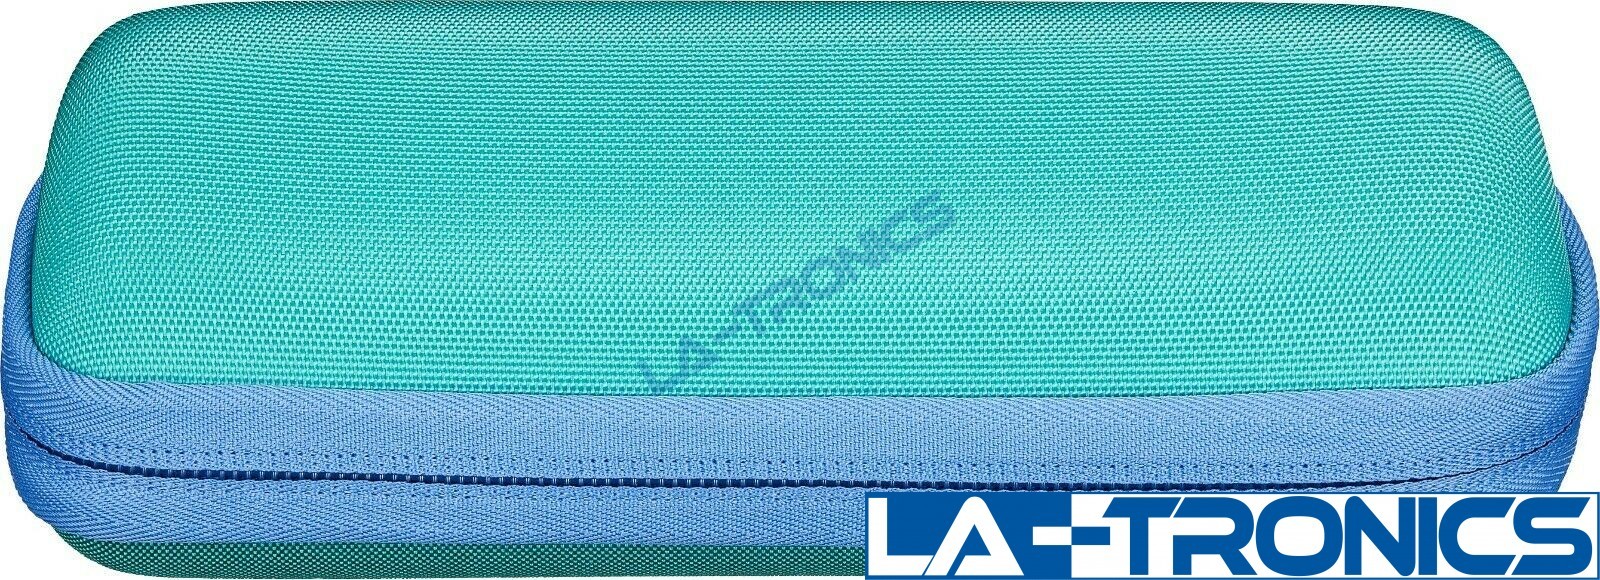 Insignia Carrying Case For Sonos Roam Portable Speaker NS-CSREVBL22 - Blue